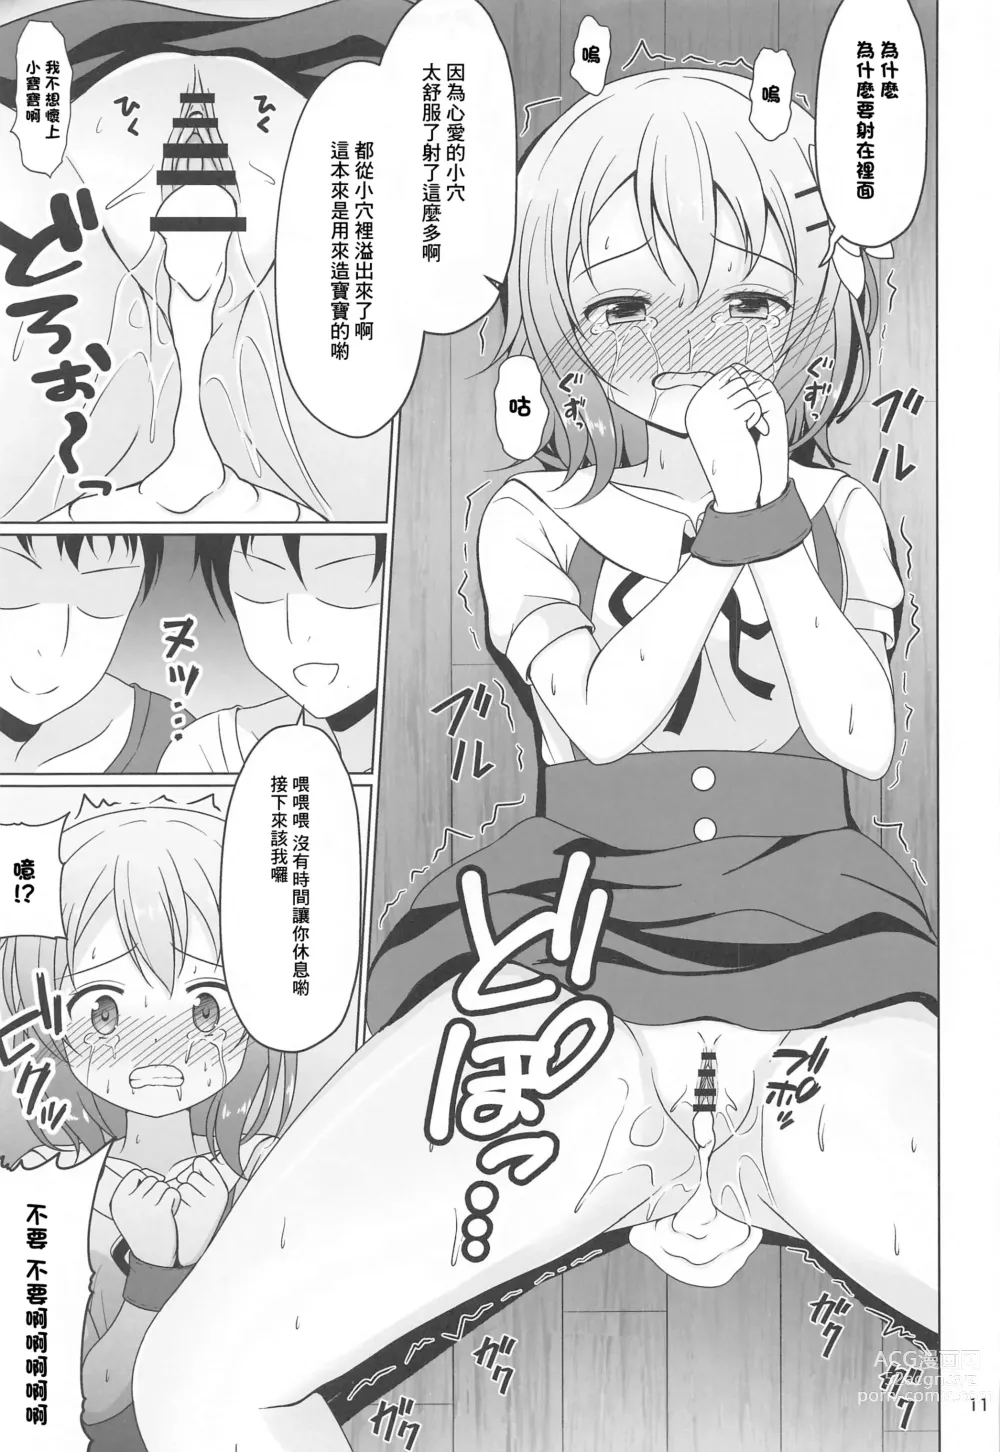 Page 10 of doujinshi Kokoa-chan Gachi Rape